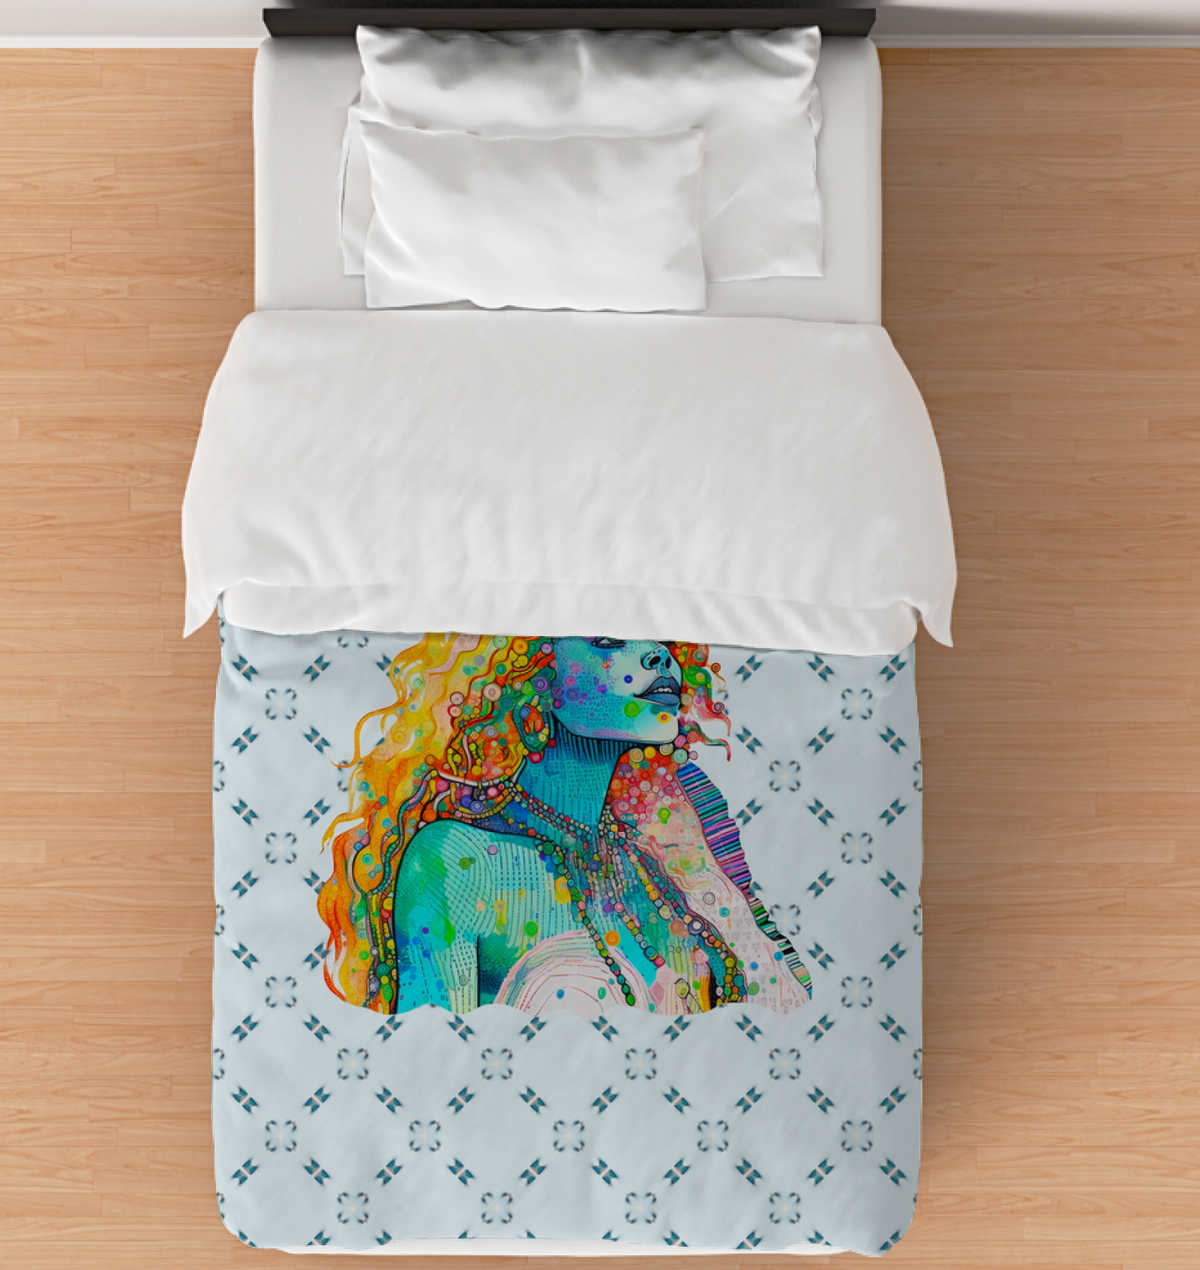 Floral Fantasy Kingdom Comforter - Intricate Floral Print Bedding.